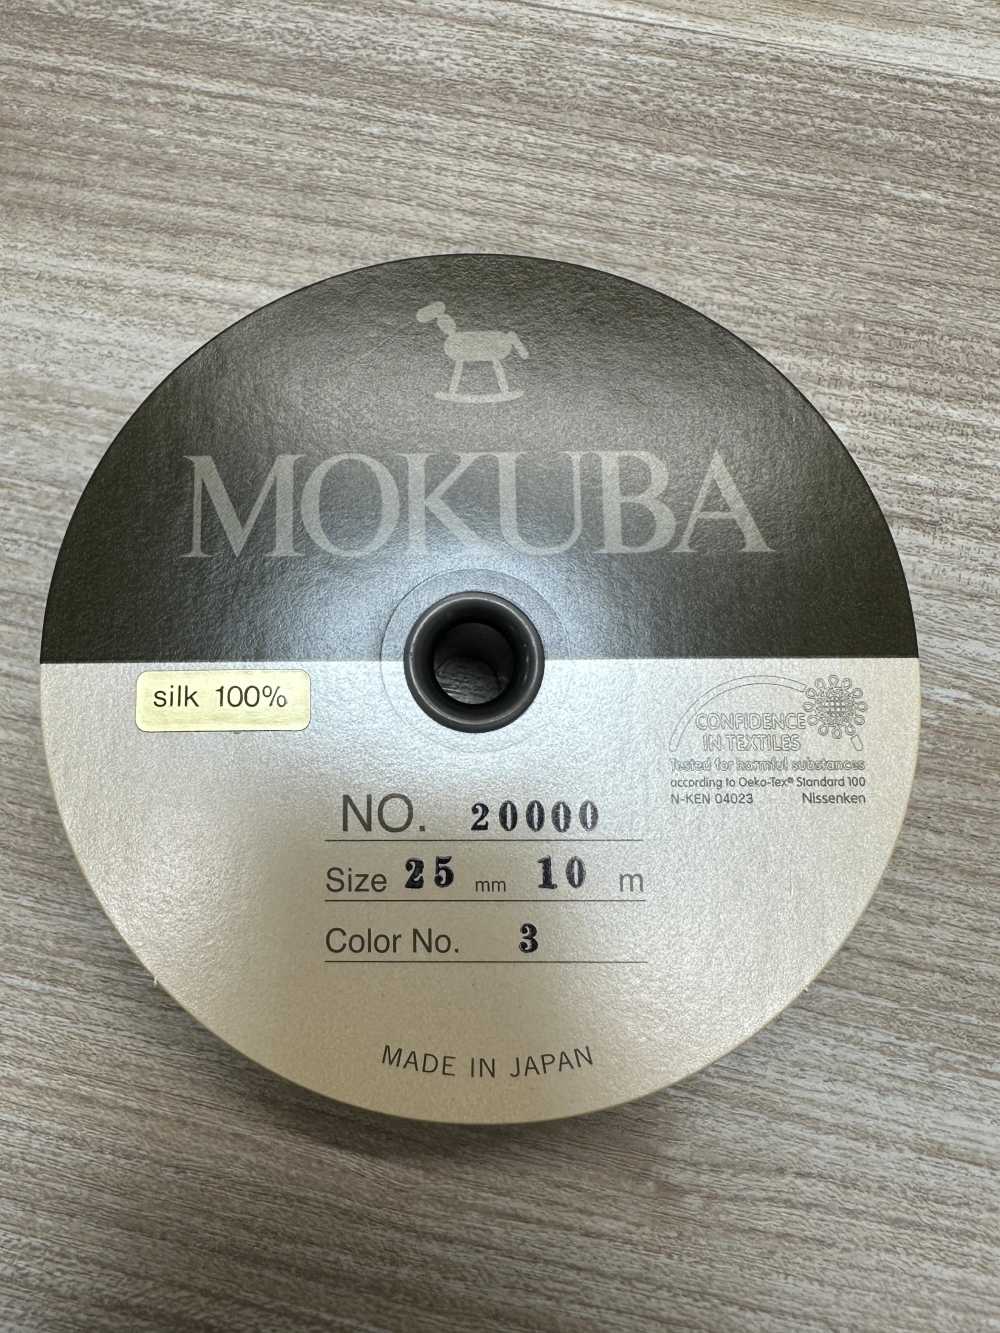 20000 MOKUBA シルク グログラン テープ【アウトレット】[リボン・テープ・コード] モクバ/オークラ商事 ApparelX  アパレル資材卸通販・仕入れ